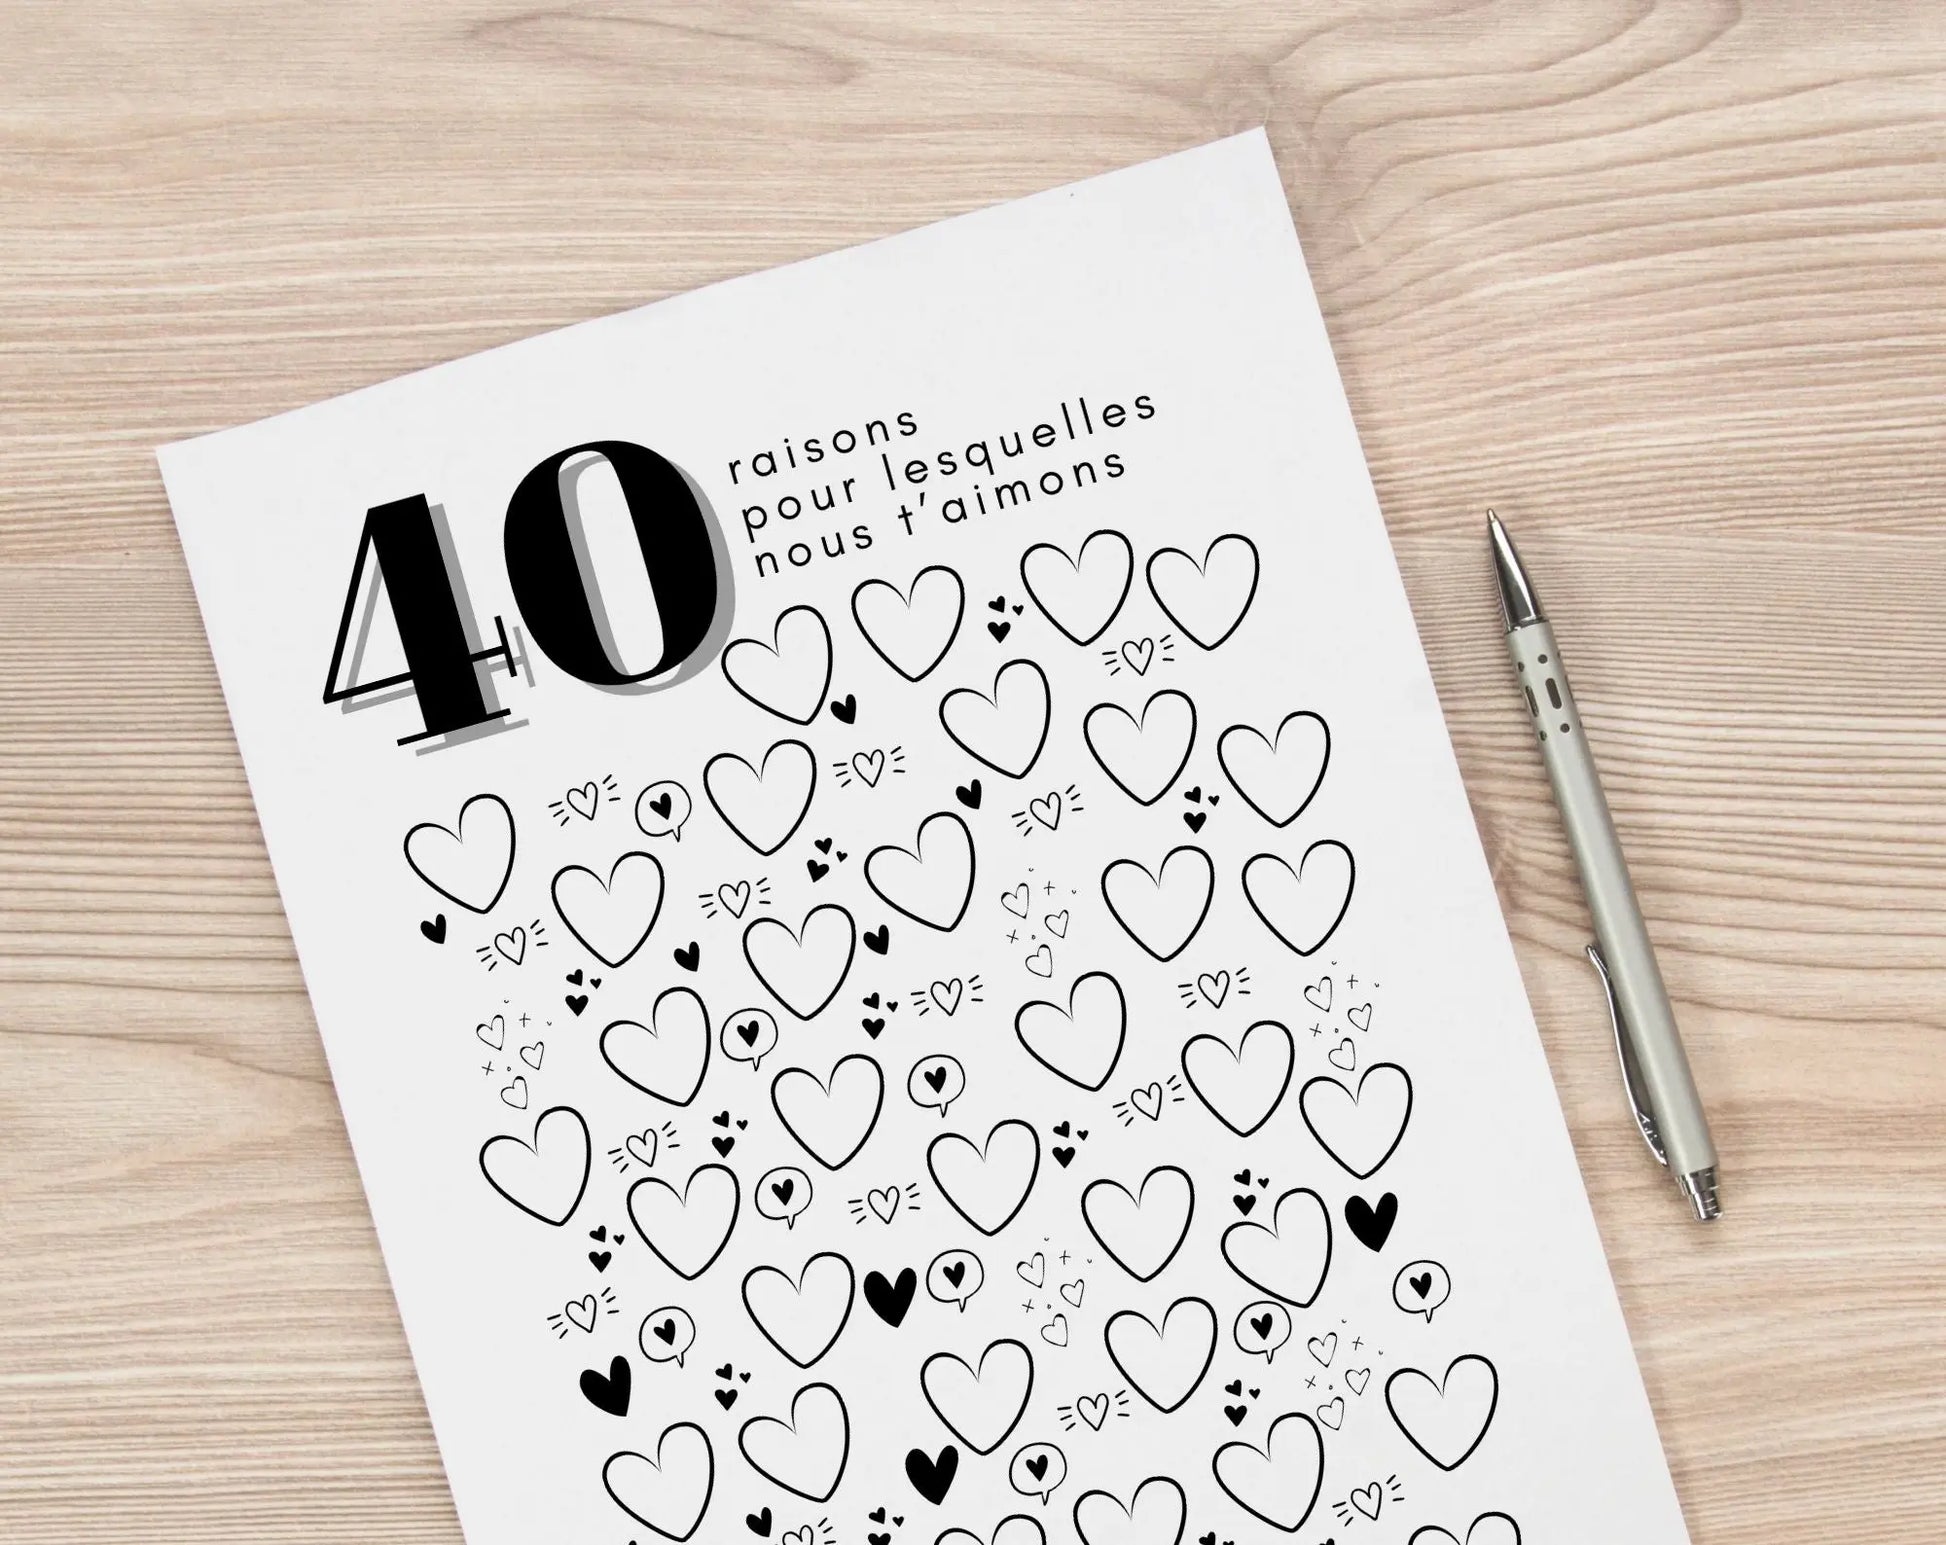 Affiche 40 raisons pour lesquelles nous t’aimons - Livre d'or 40 ans FLTMfrance